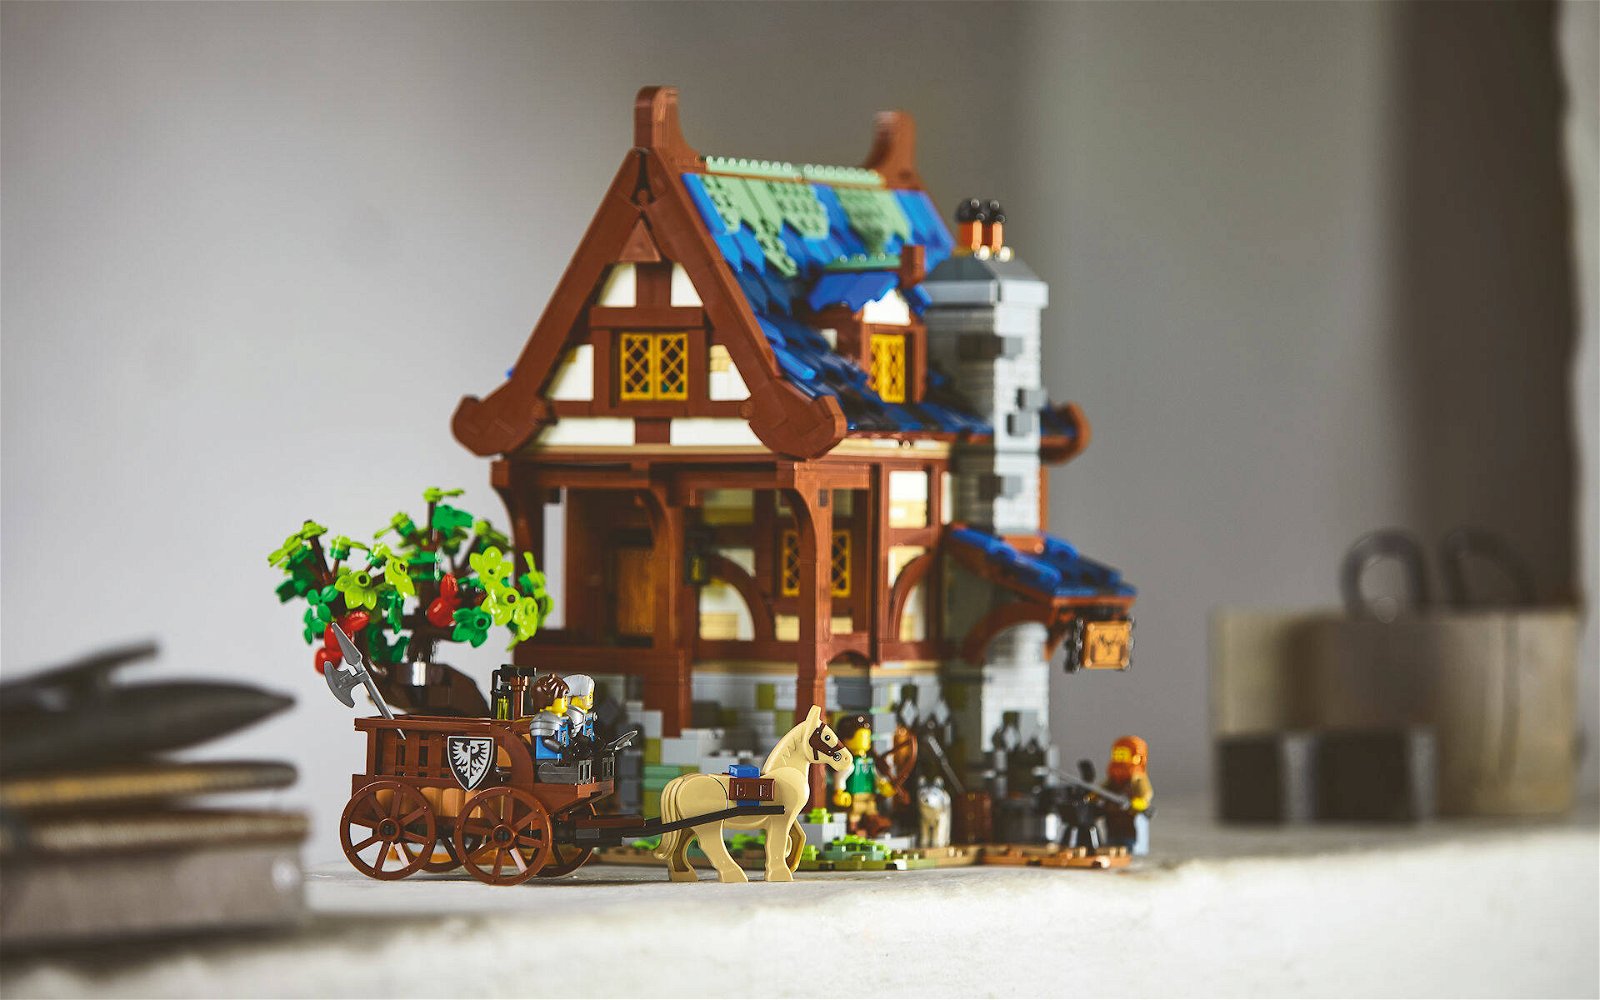 Immagine di LEGO: presentato il nuovo set Ideas #21325 Fabbro medievale